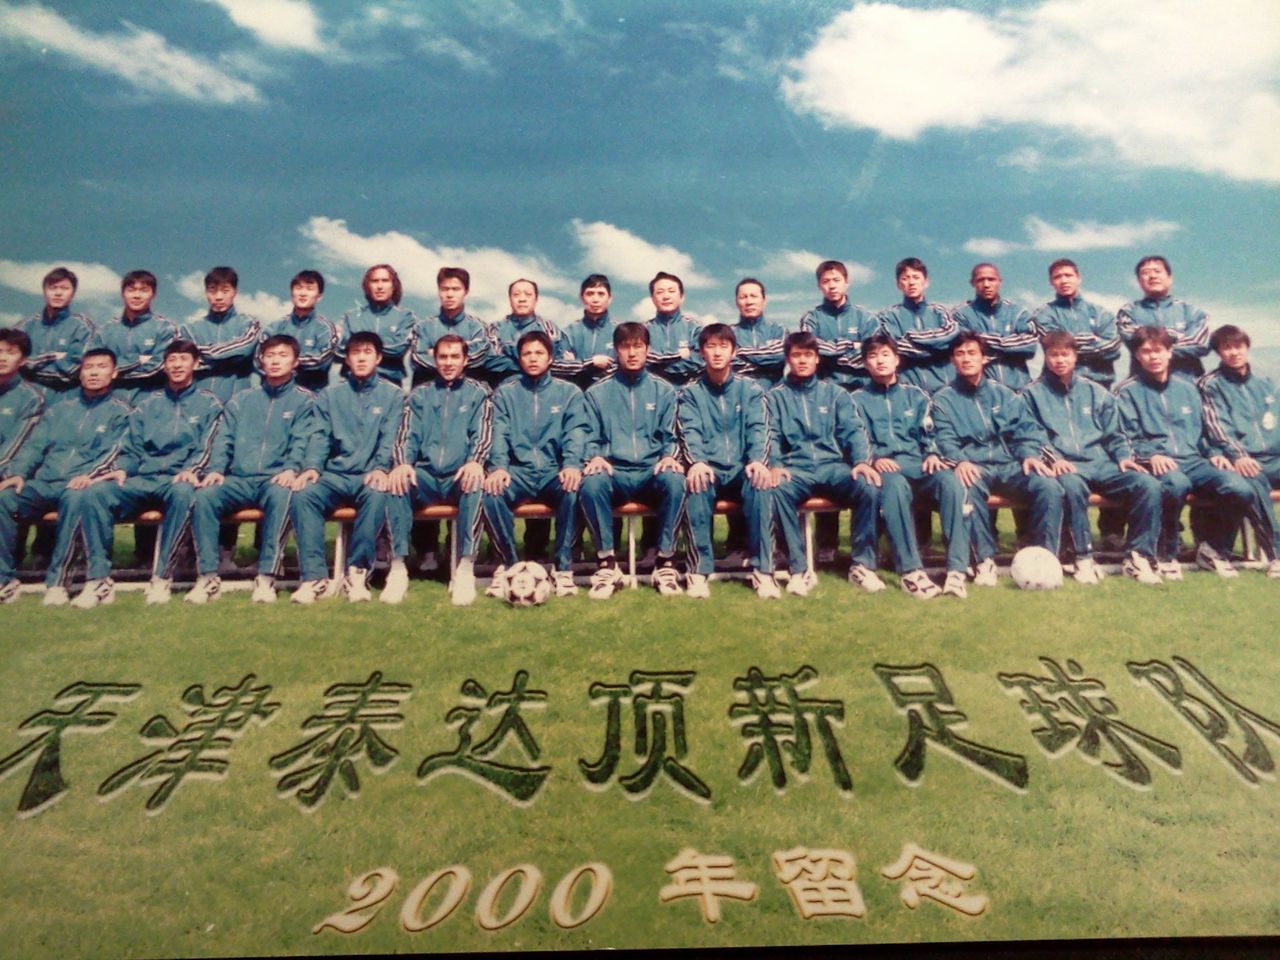 2000年天津泰達頂新足球隊全家福